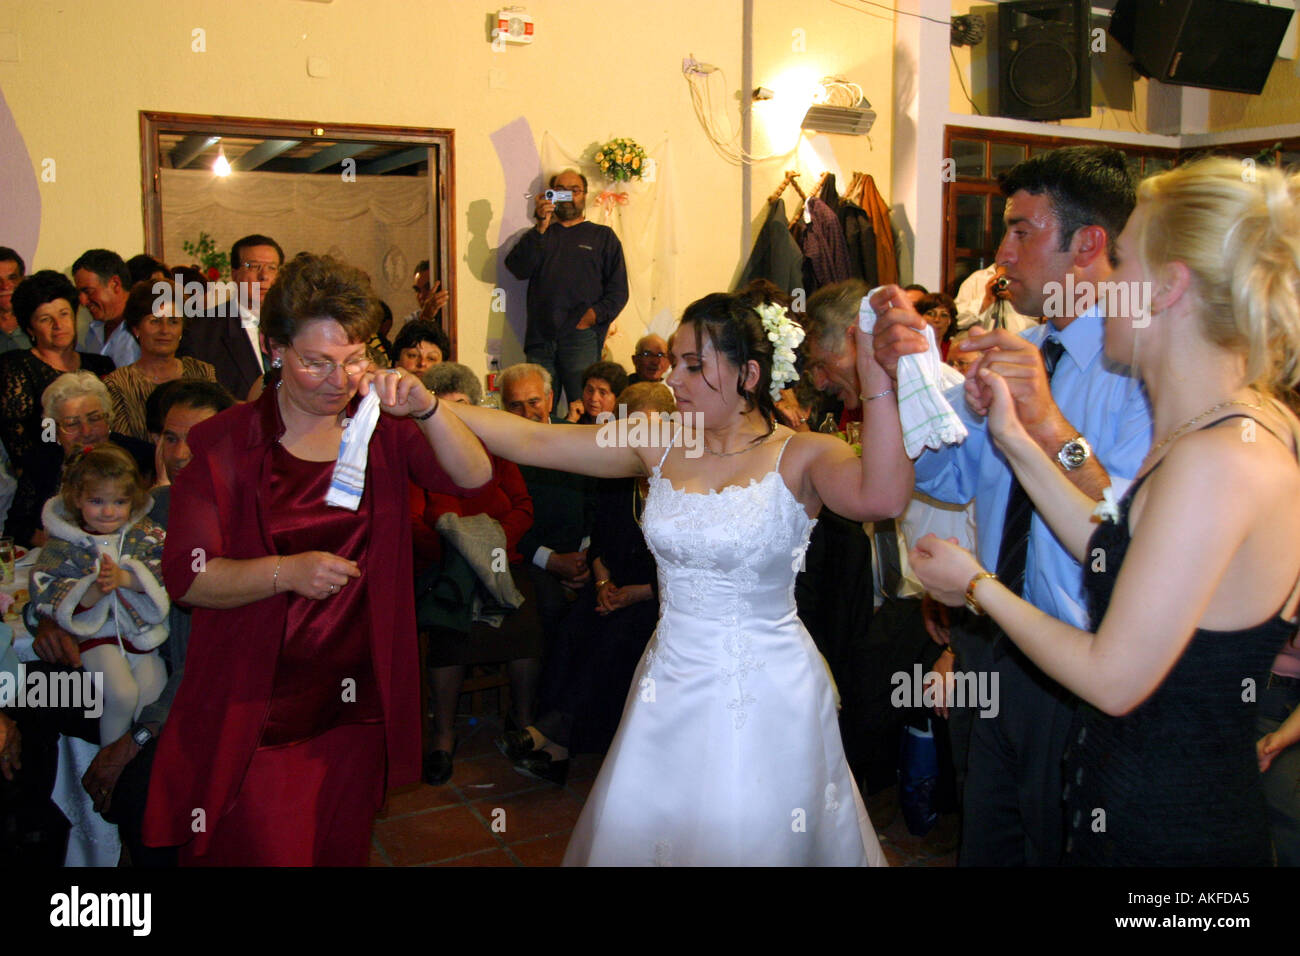 Festín de bodas fotografías e imágenes de alta resolución - Página 5 - Alamy